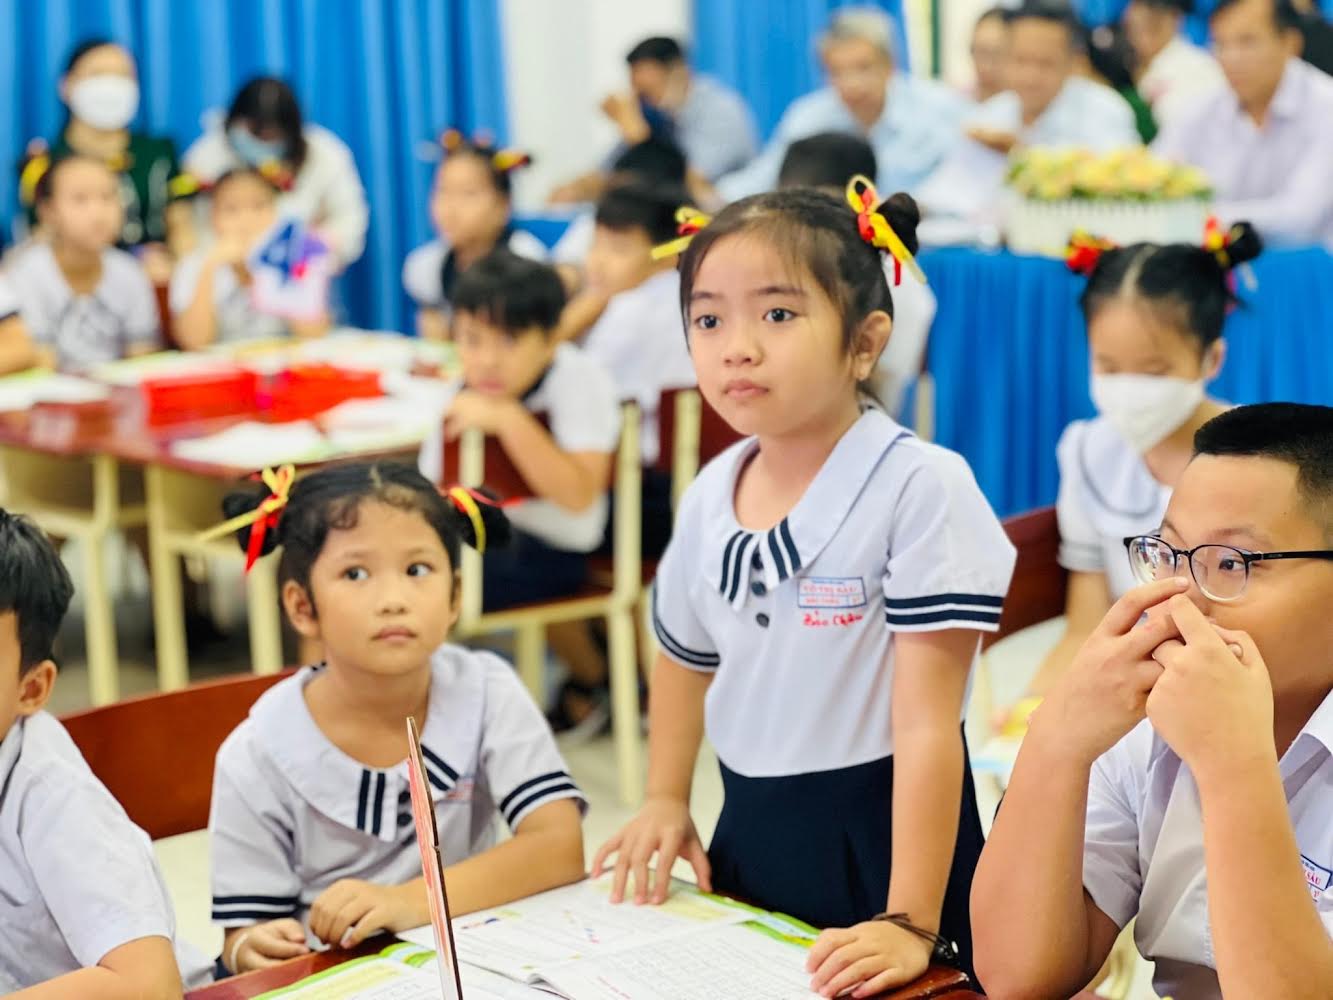 Theo tiến sĩ Nguyễn Thị Thu Trang - Giám đốc Trung tâm Nghiên cứu và ứng dụng giáo dục STEM, Trường ĐH Sư phạm TPHCM, hoạt động trải nghiệm STEM cần tạo được hứng thú cho học sinh khi tham gia. 